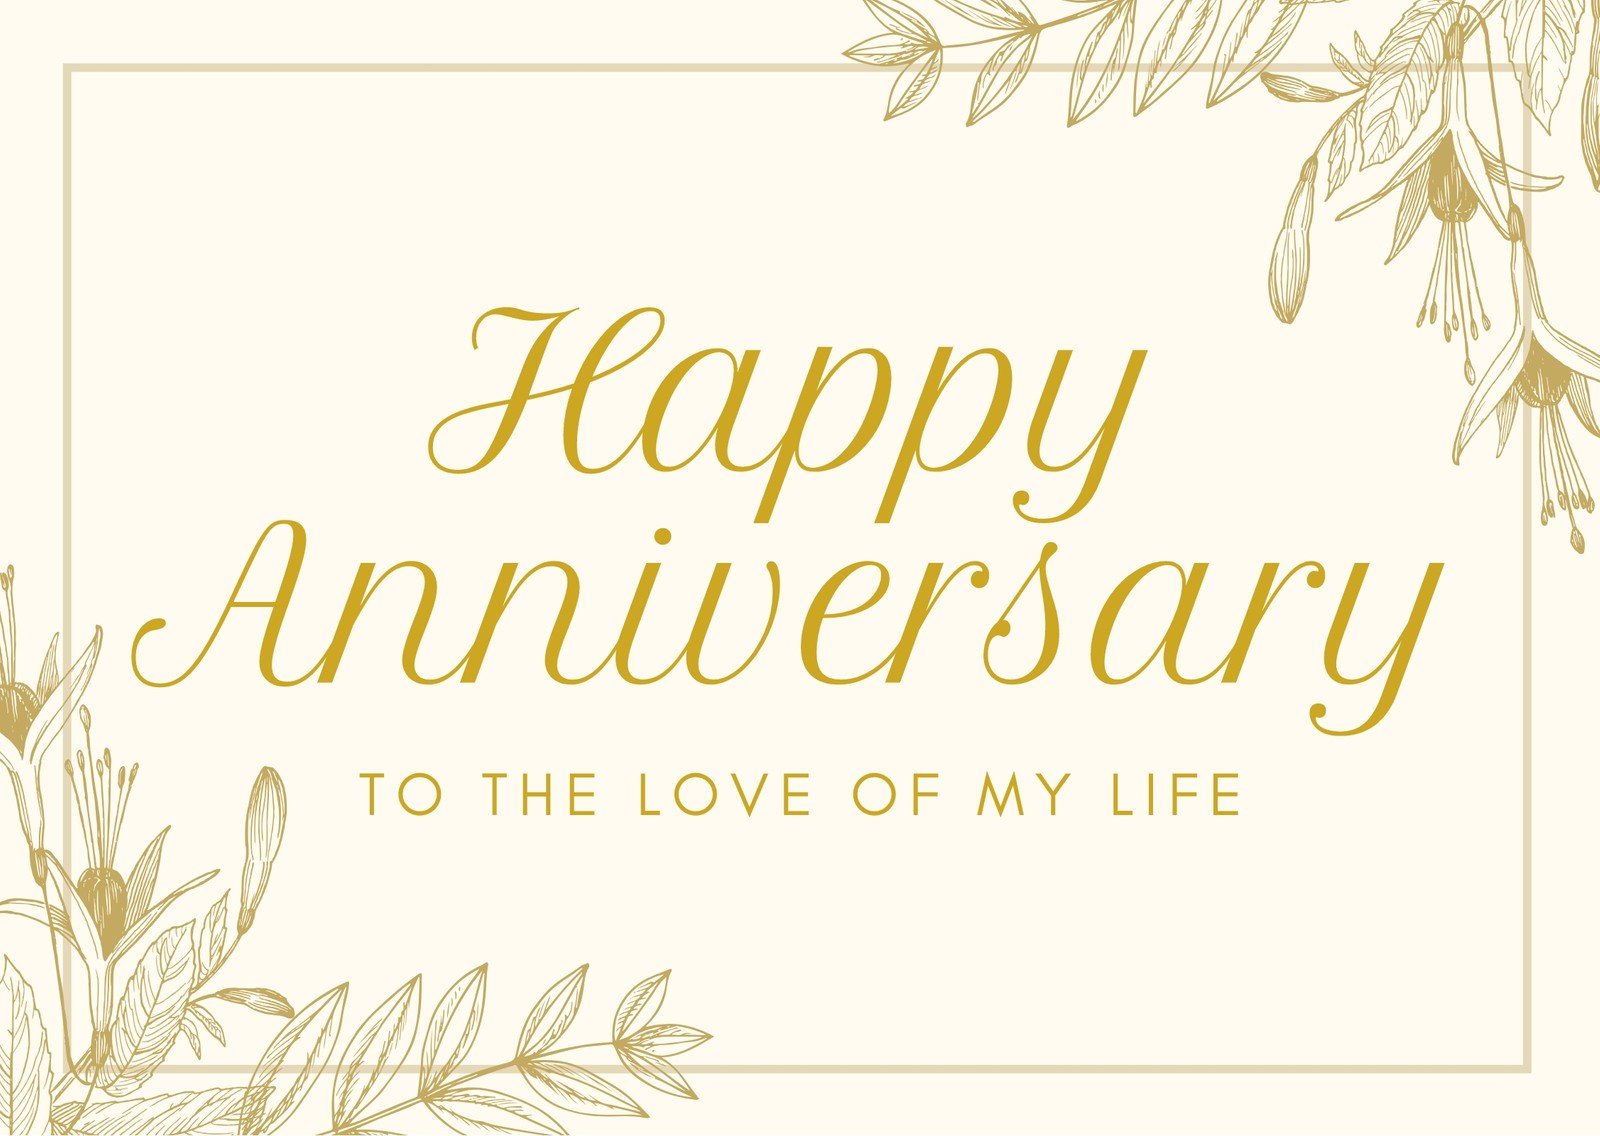 Happy anniversary to my husband